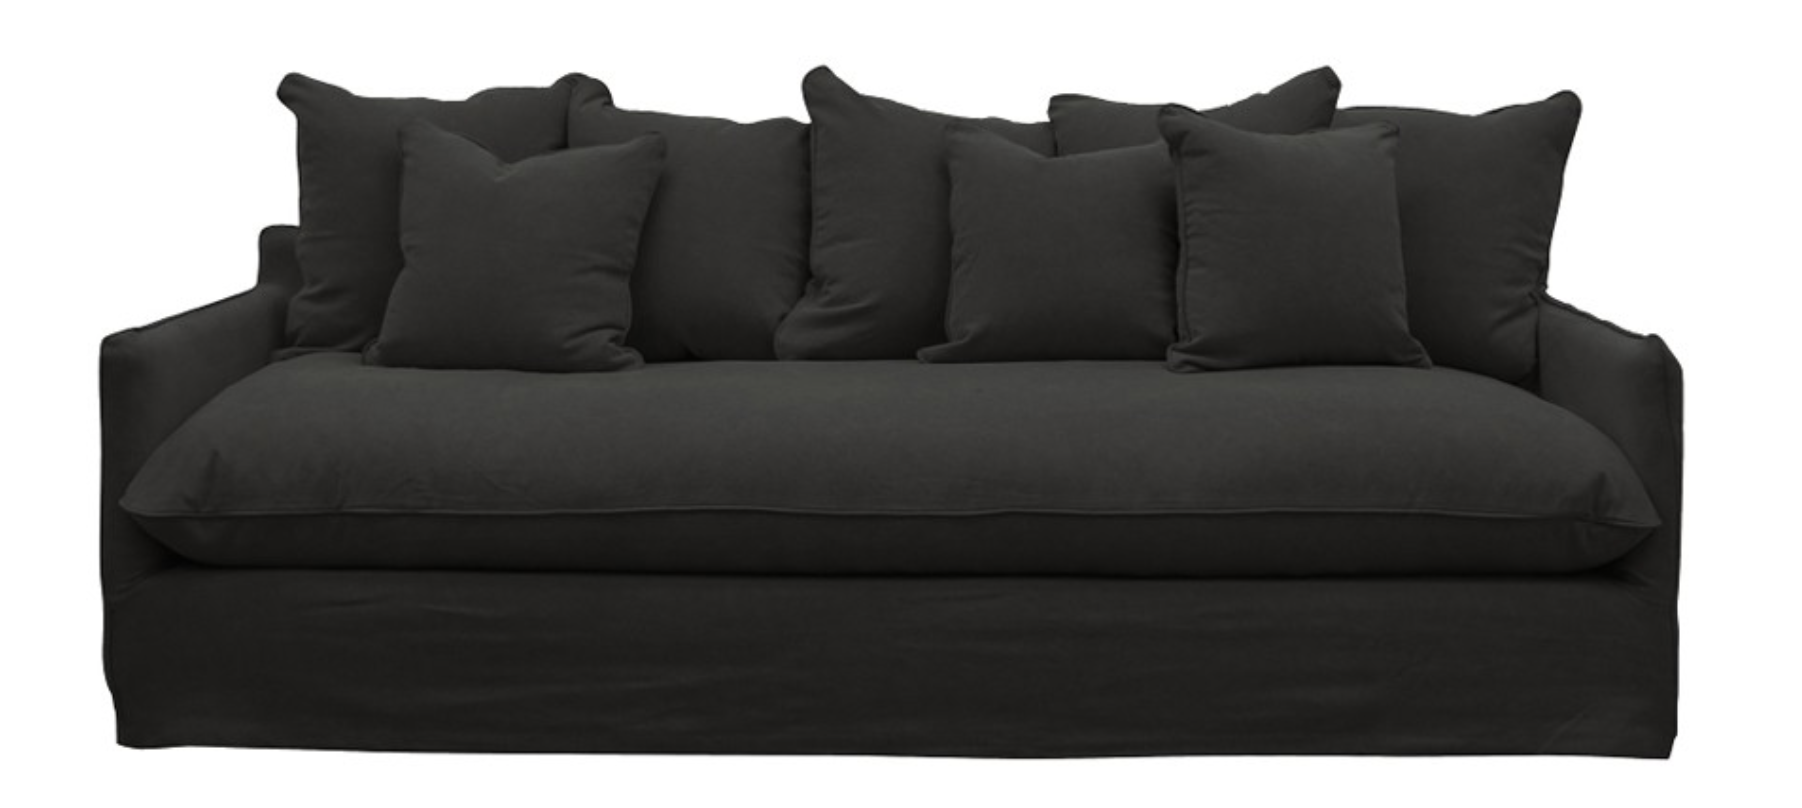 Lotus Slip Cover Sofa Carbon - IDO Interior Design Online